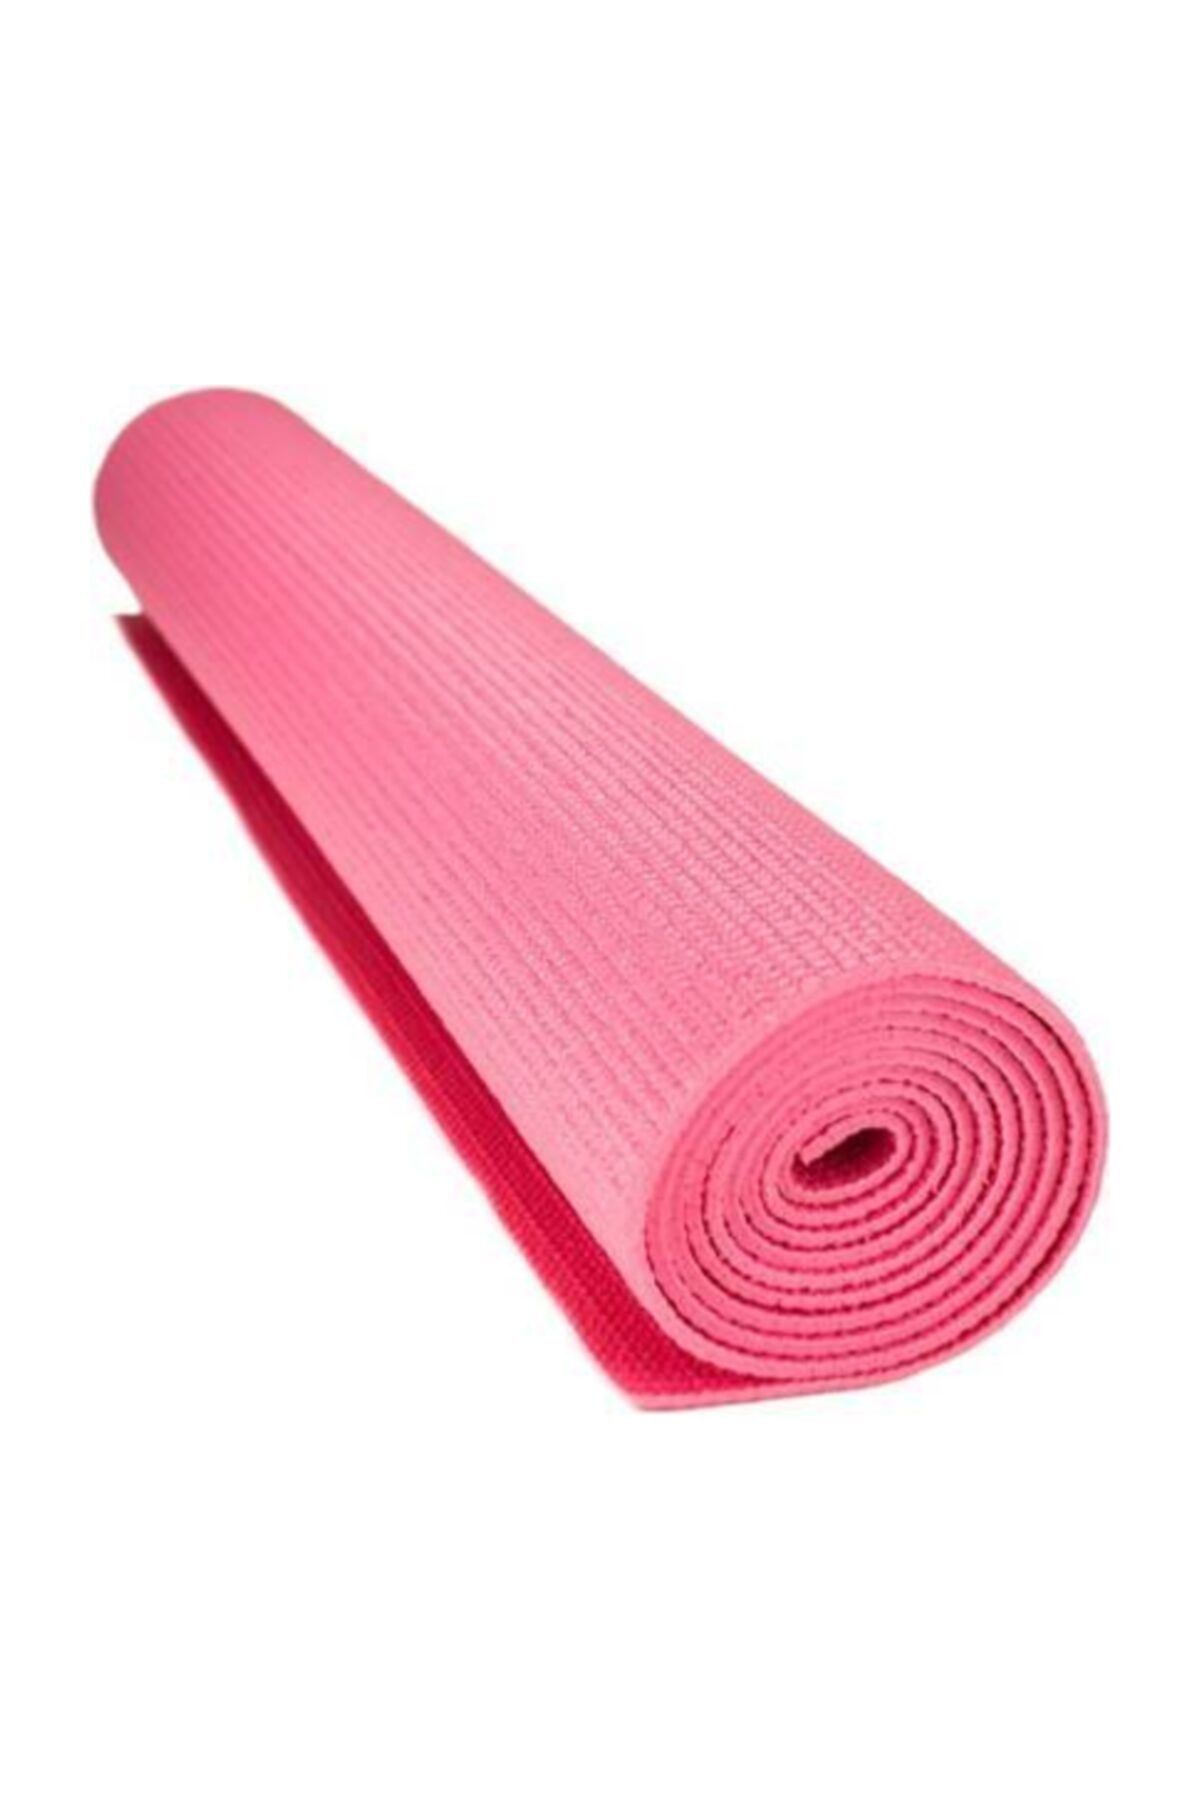 Размер коврика для йоги. Коврик для йоги розовый. Гимнастический ковер. Коврик для фитнеса, розовый. Yoga mat коврик для йоги.